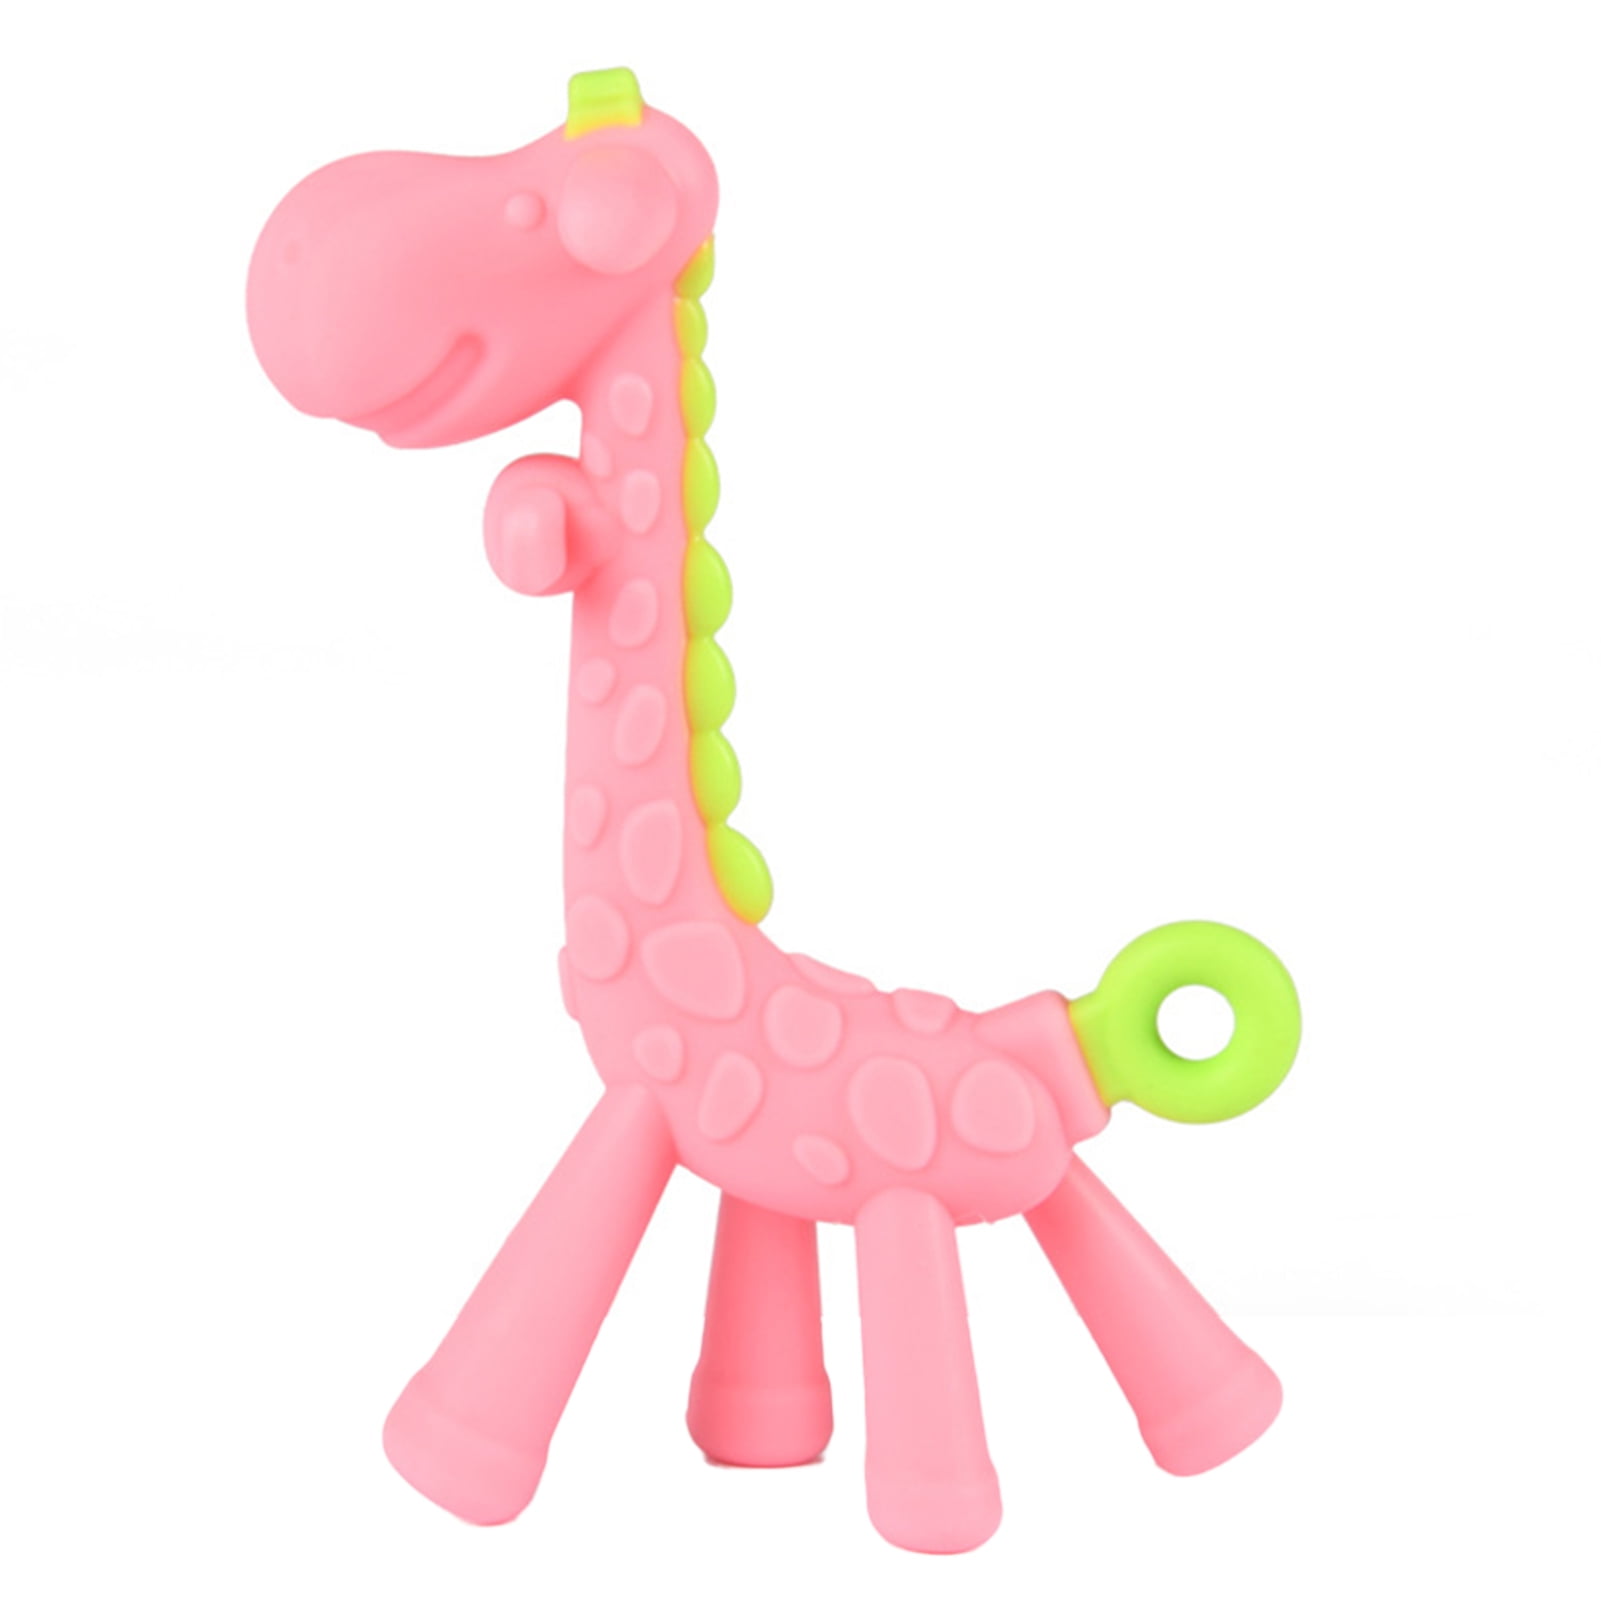 Baby shower Giraffe crochet Gift for pregnant Giraffe Rattle Toy Gift for newborn Toy for newborn Giraffe Teether Toy Baby toys set